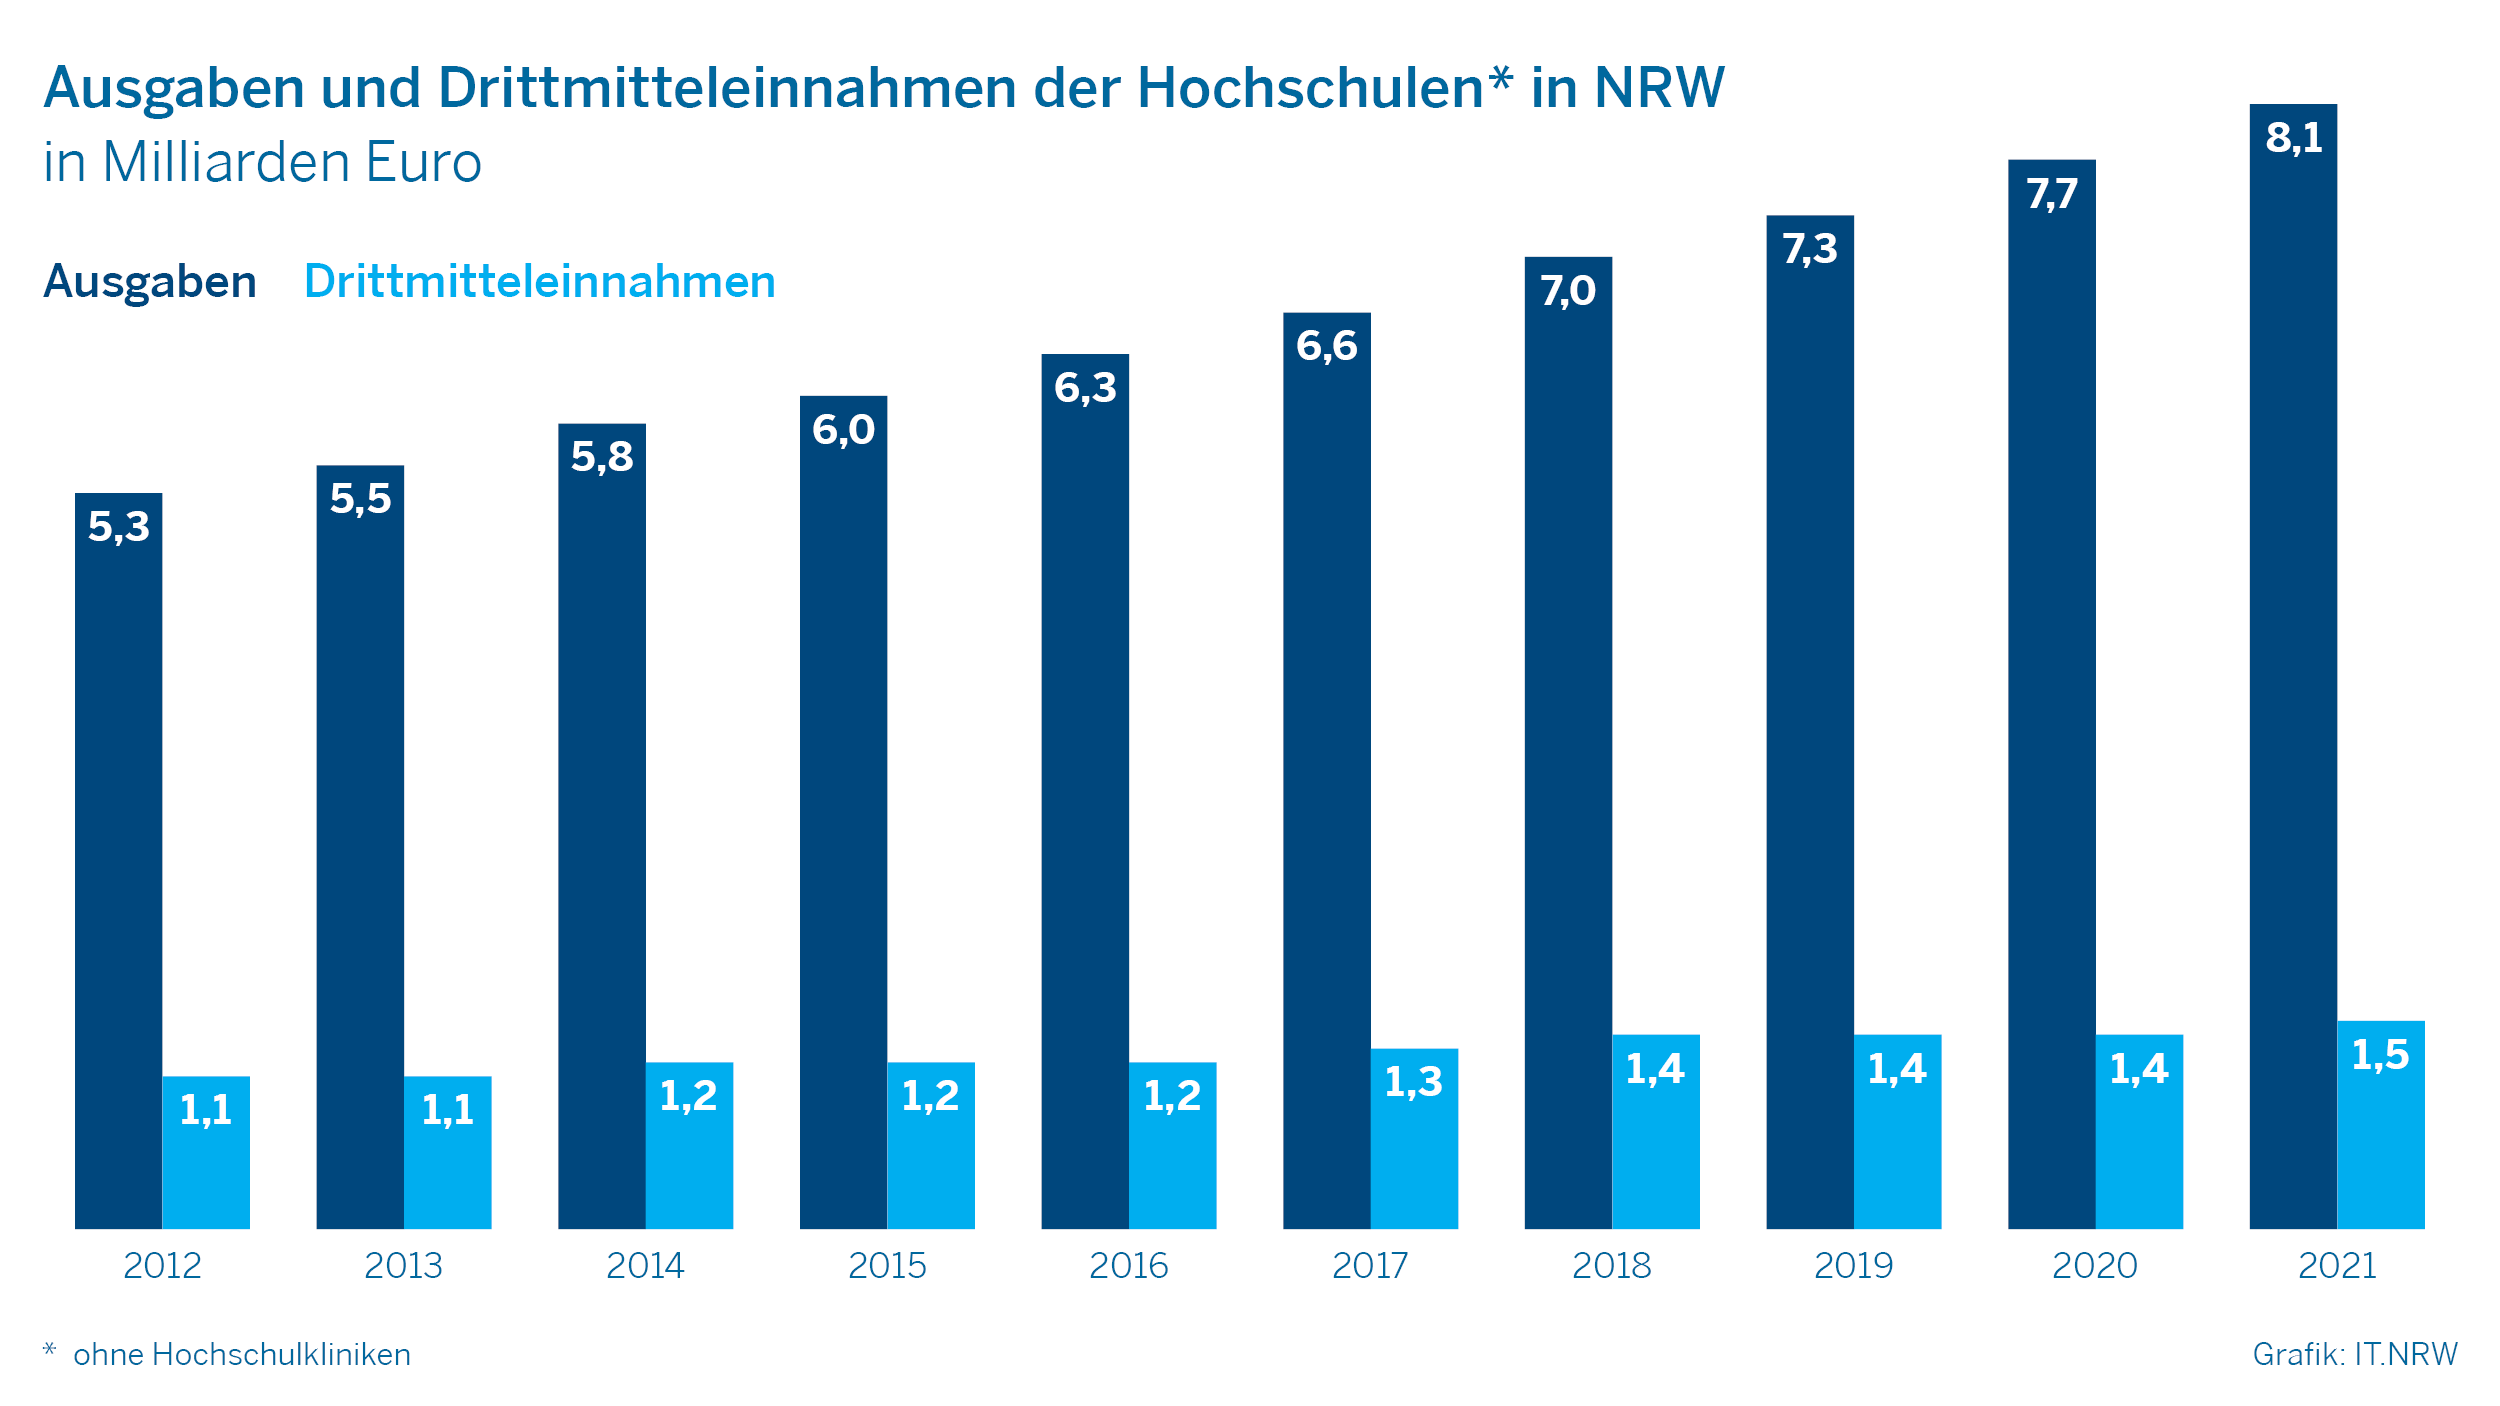 Ausgaben und Drittmitteleinnahmen der Hochschulen in NRW